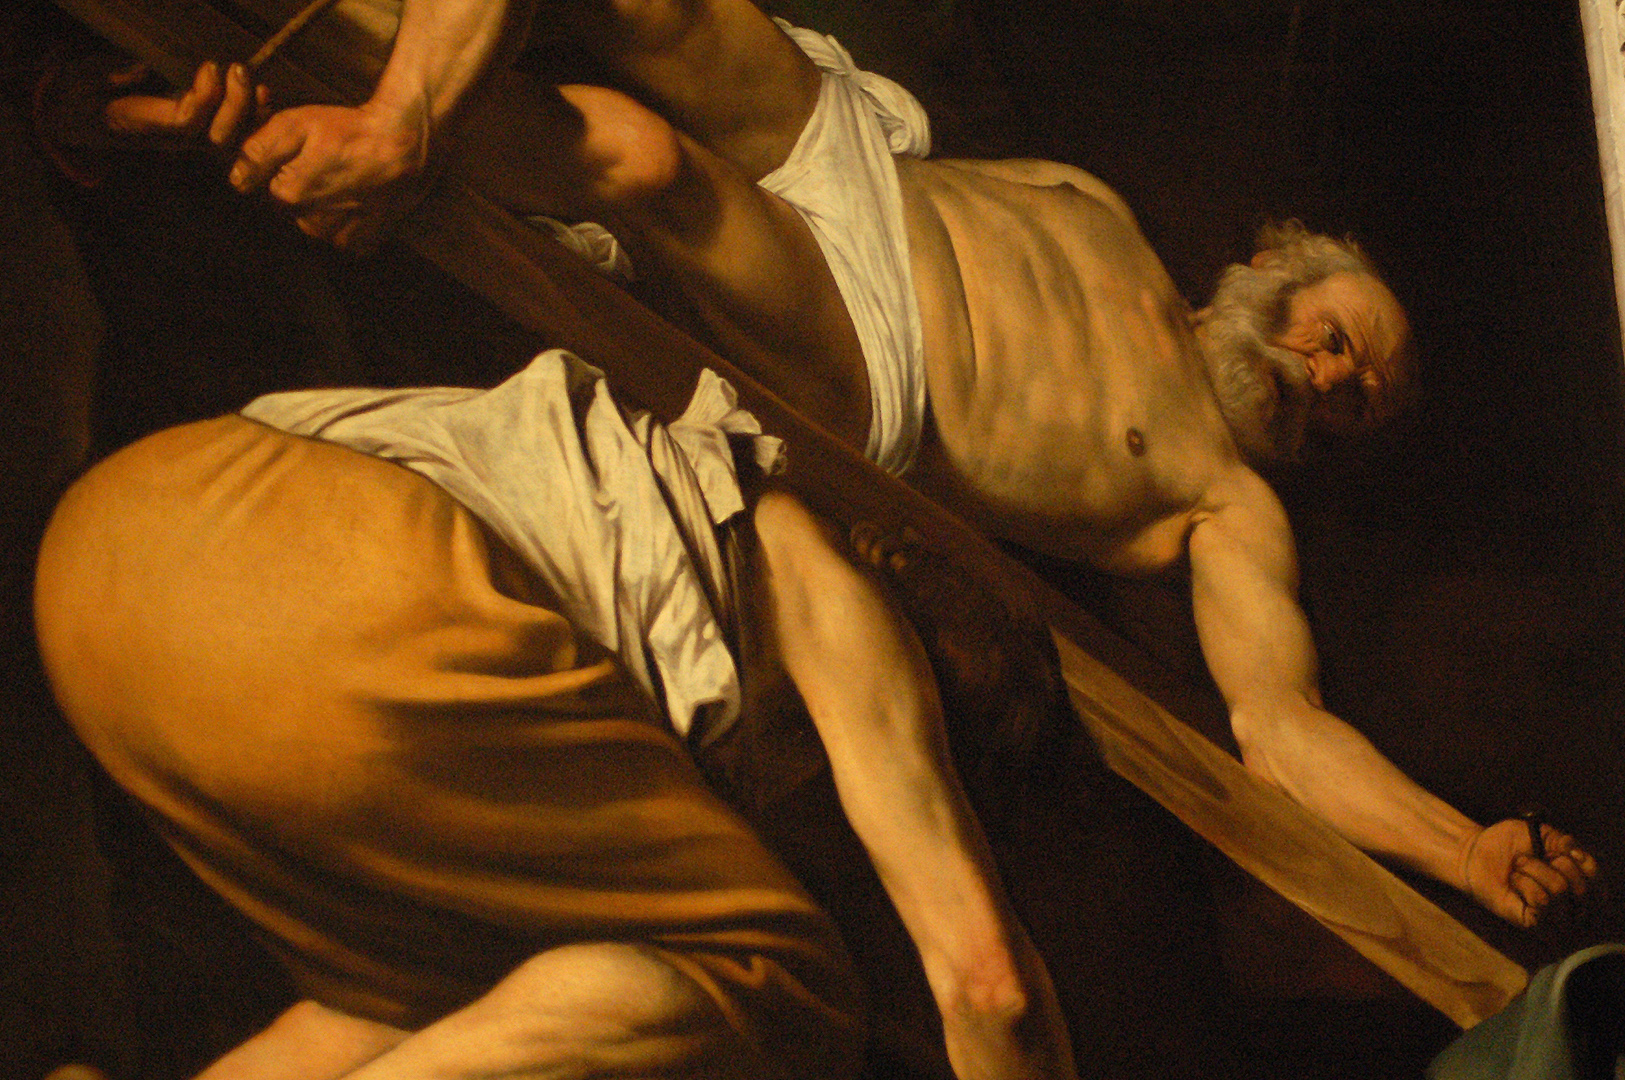 De kruisiging van Petrus (Caravaggio, Rome), The Crucifixion of Saint Peter (Caravaggio, Rome)